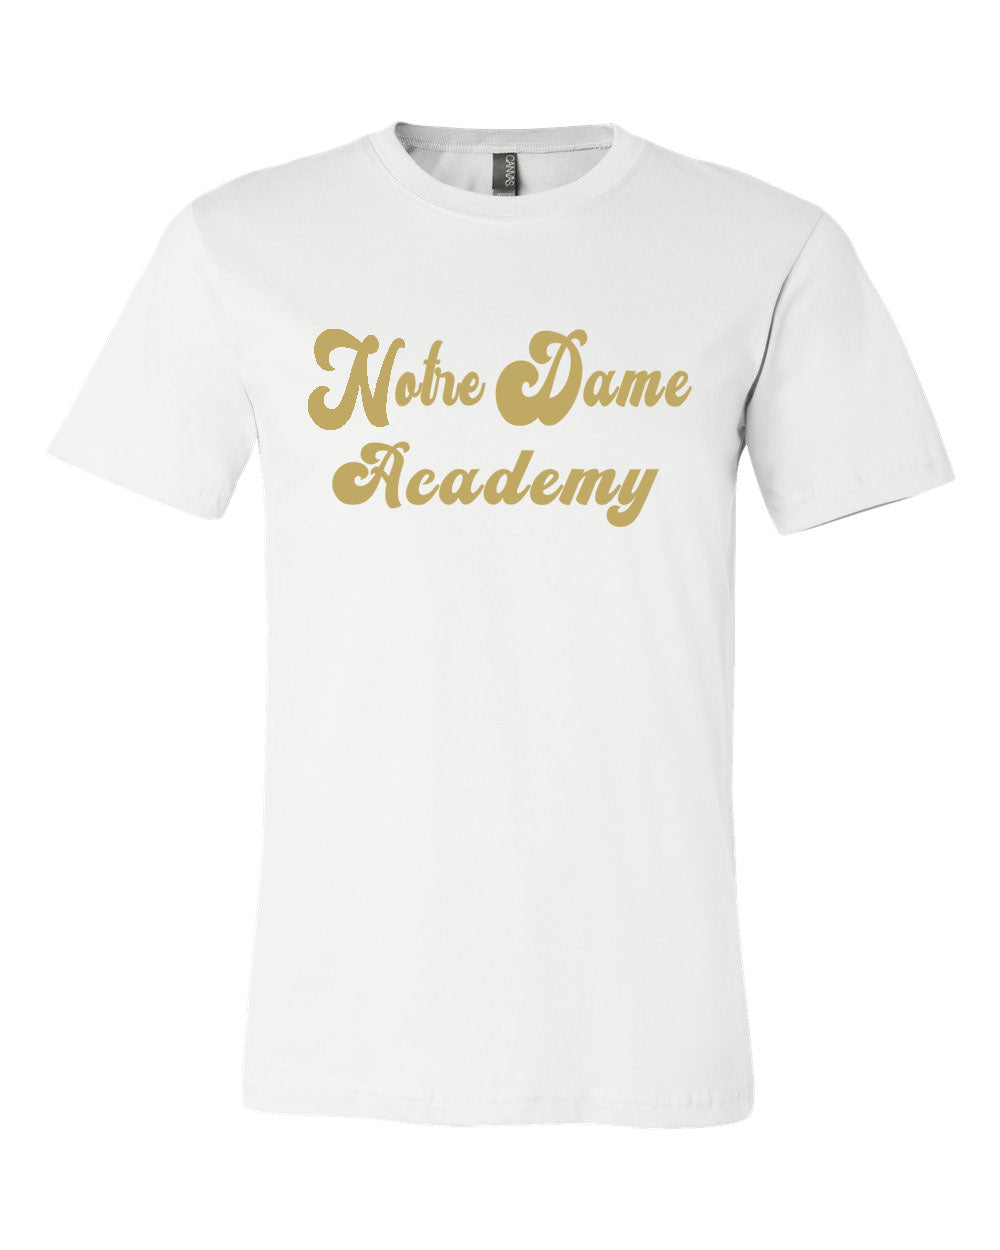 Notre Dame Academy T-Shirt